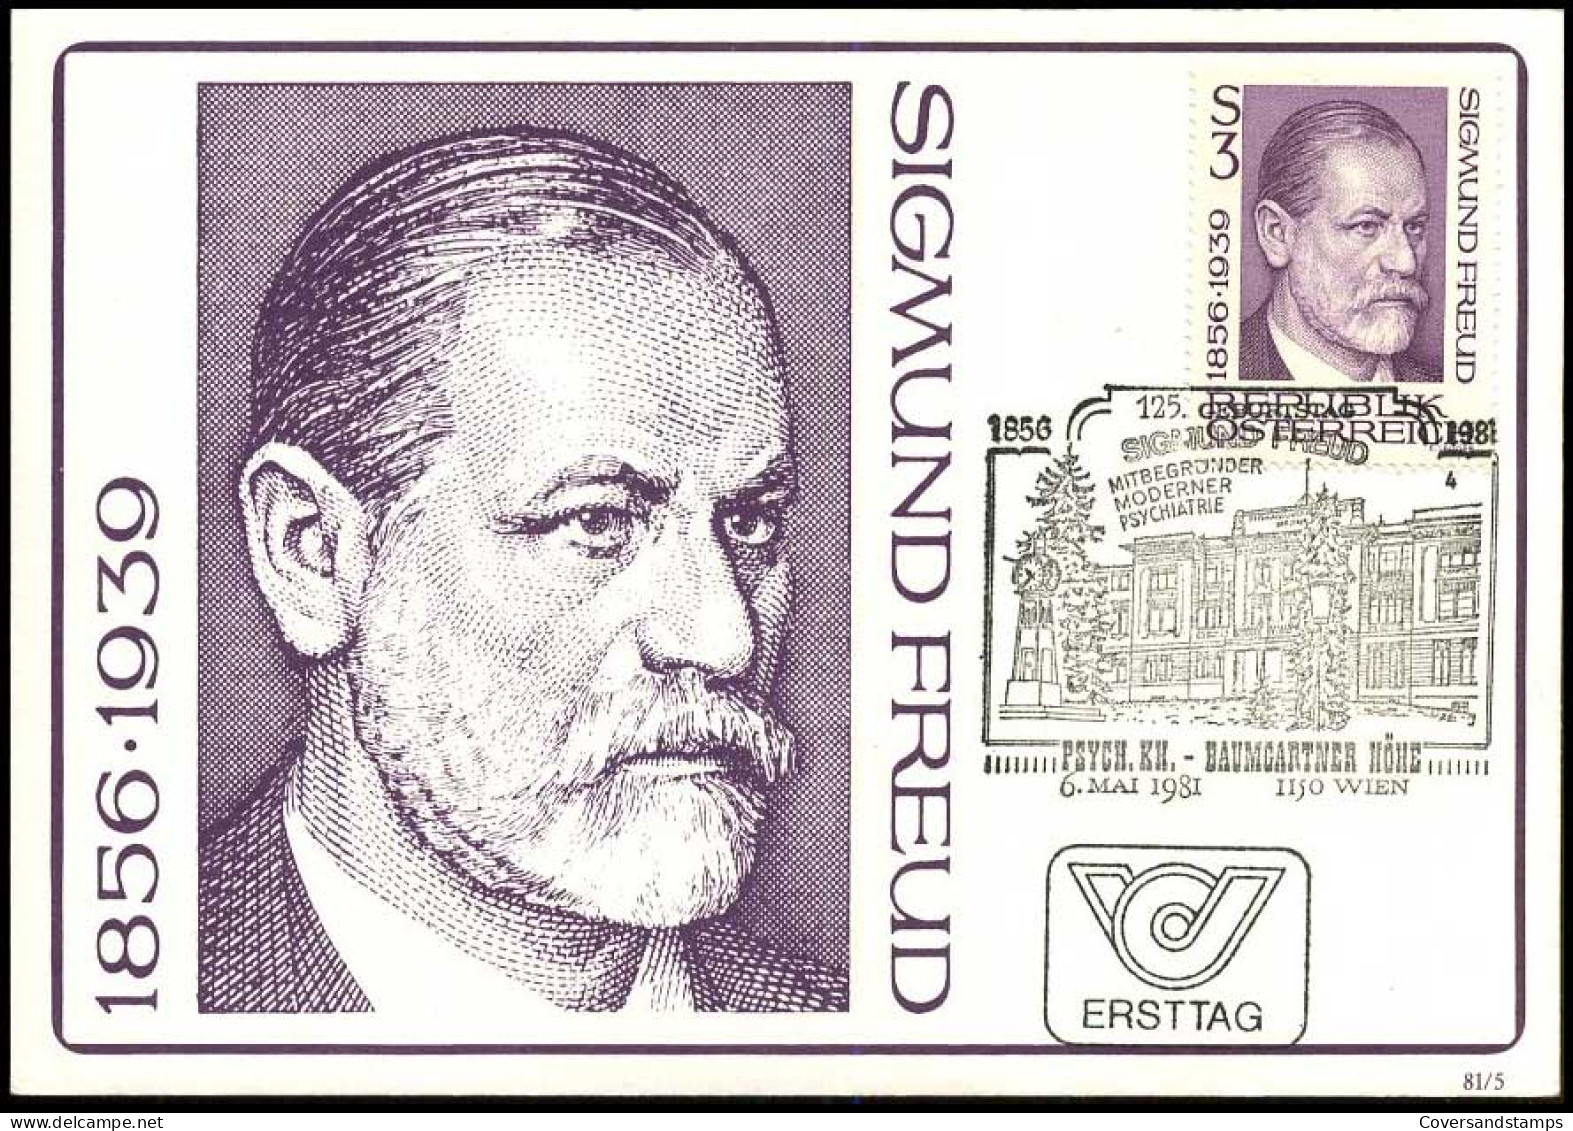 österreich - Maximum Card - Siegmund Freud - Cartes-Maximum (CM)